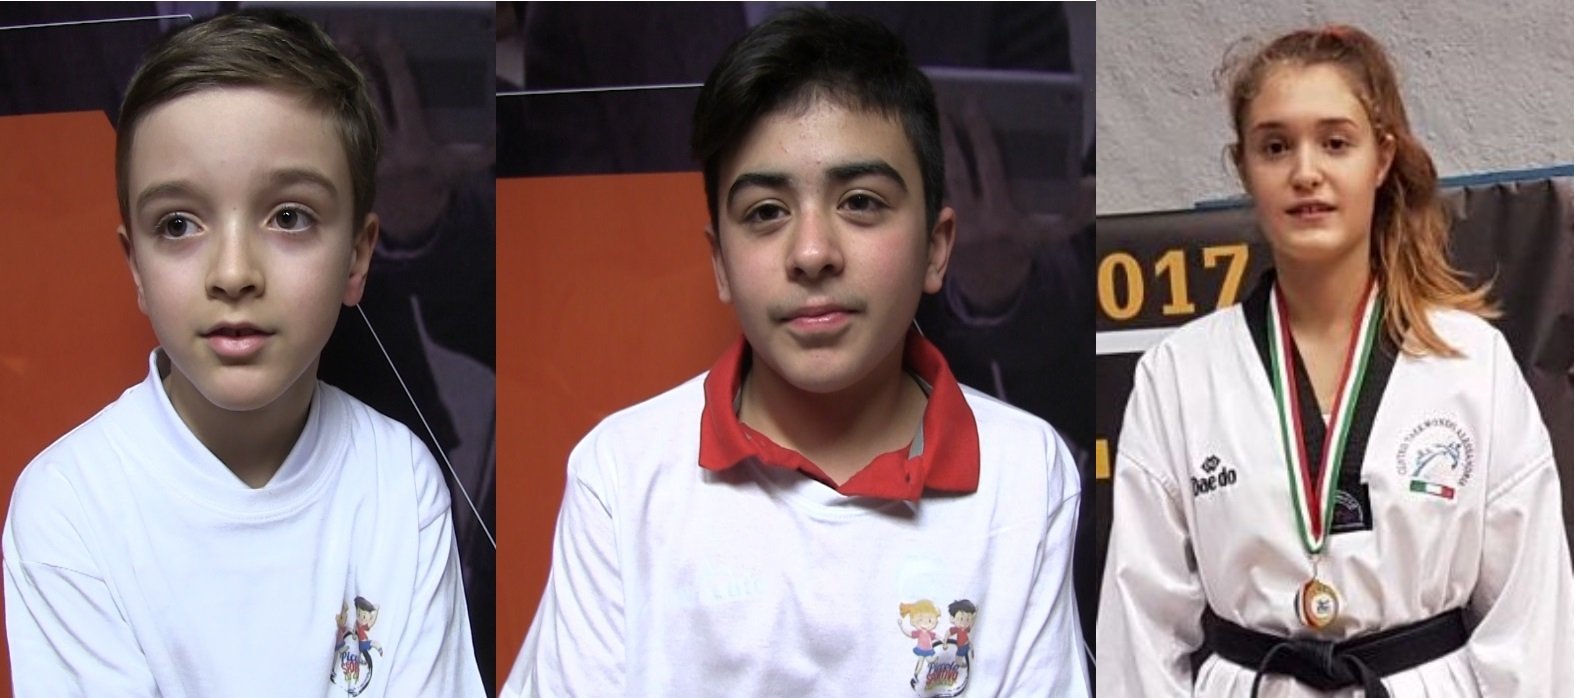 Edoardo, Alessio e Sonia i tre piccoli sportivi più votati a febbraio